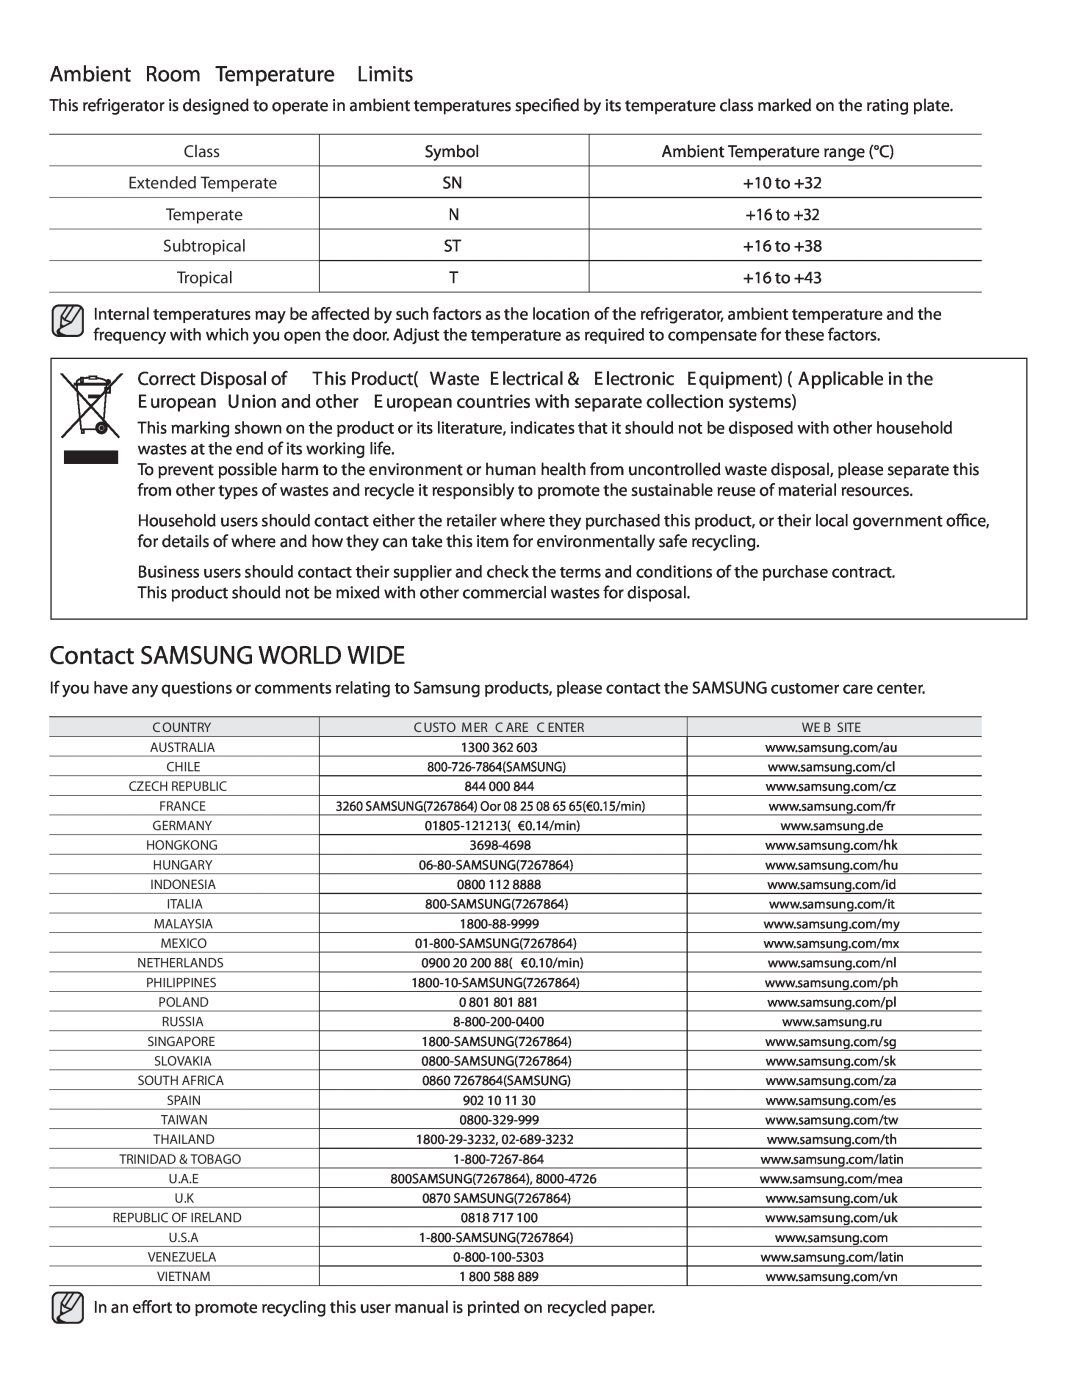 Samsung DA68-01890Q user manual Contact SAMSUNG WORLD WIDE, Ambient Room Temperature Limits, Class, Symbol 